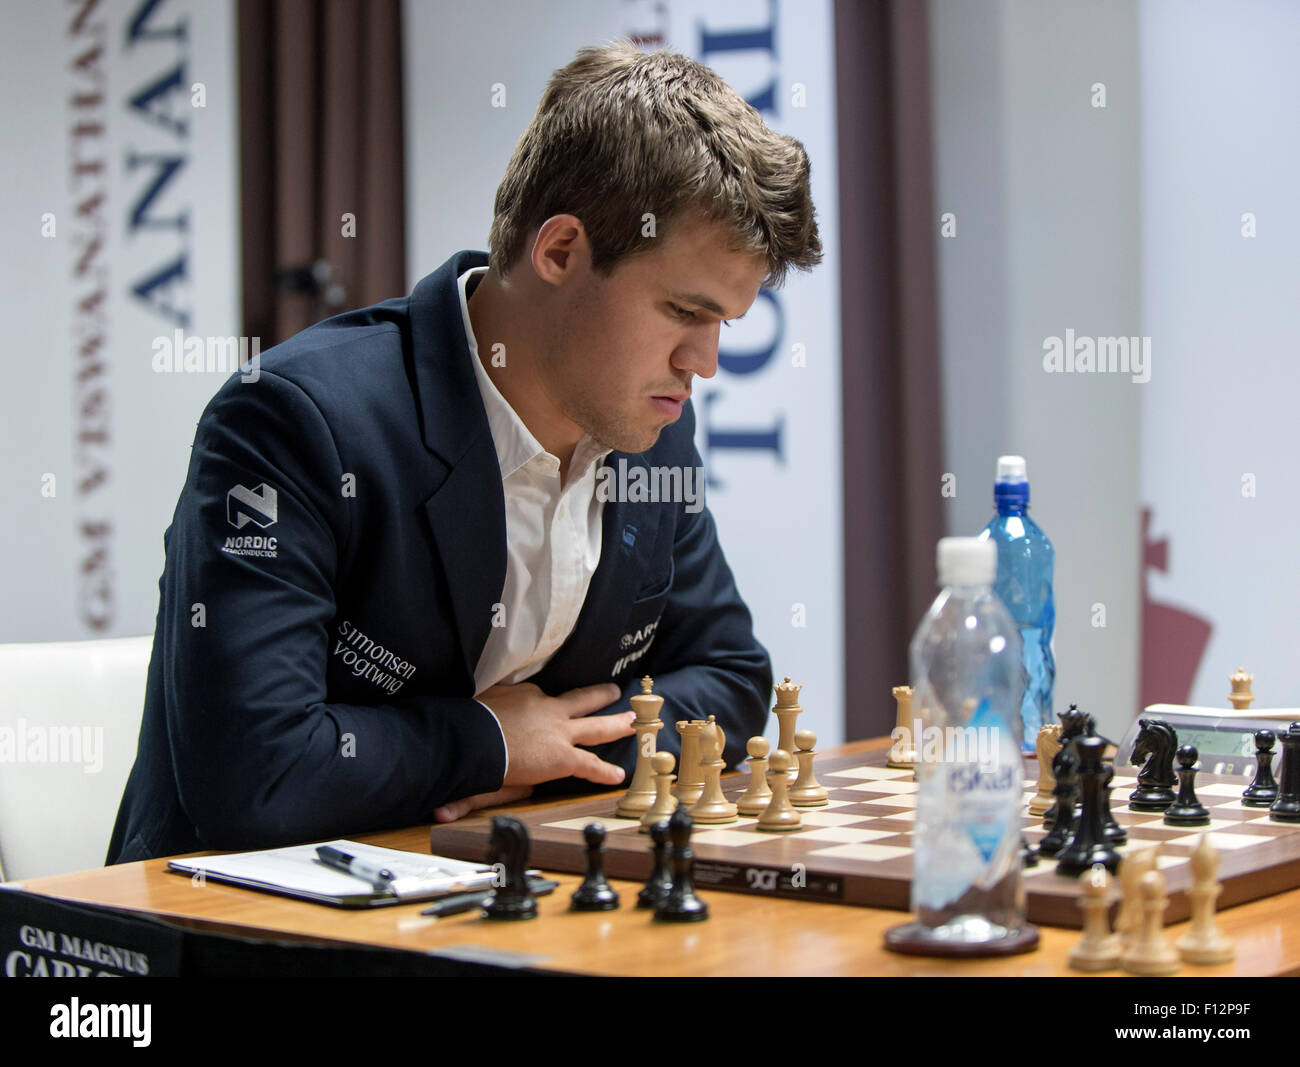 Magnus Carlsen ranks Judit Polgar 